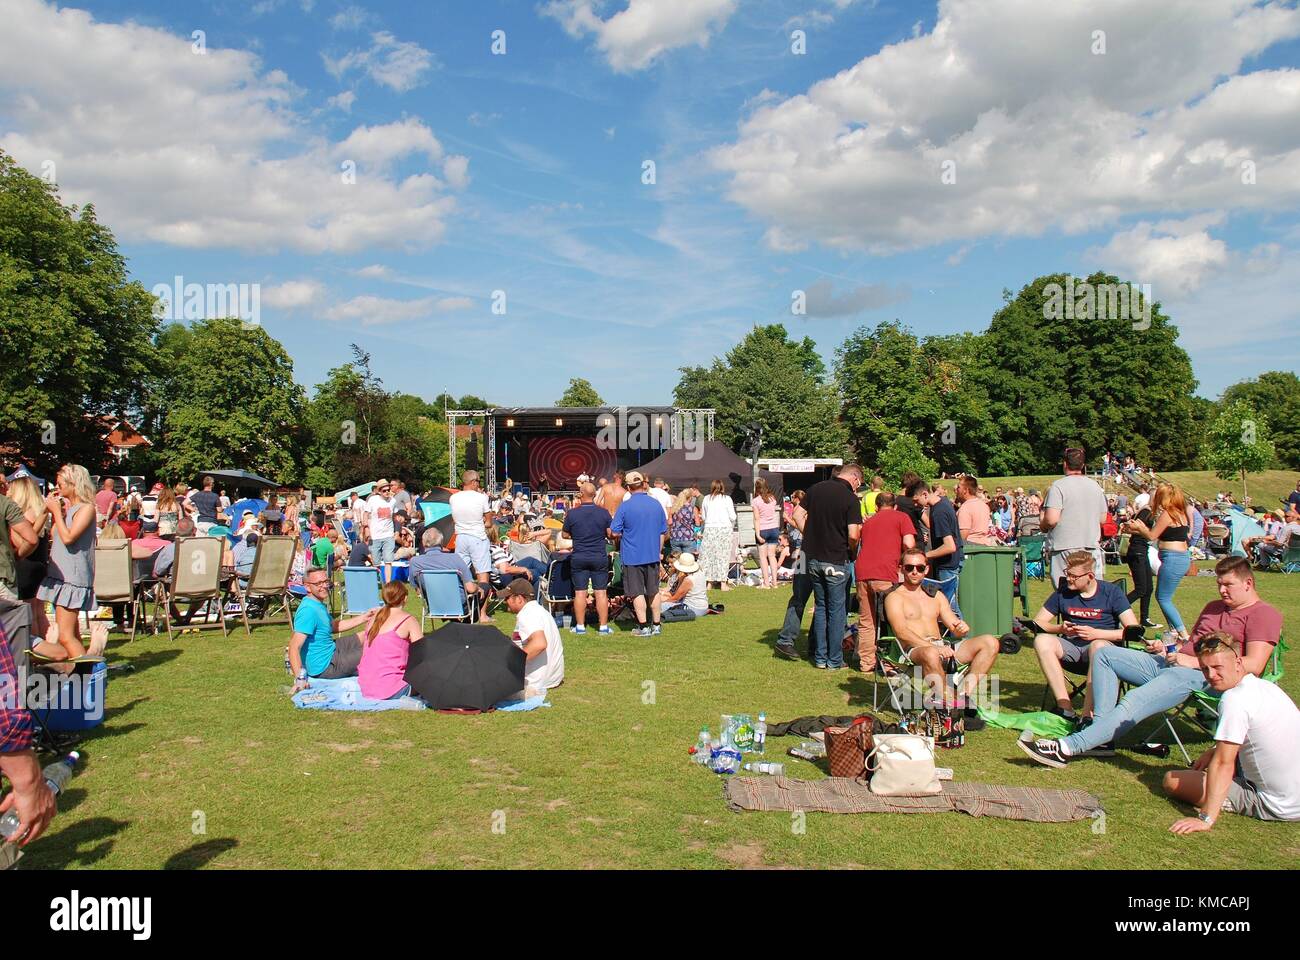 Le persone che si godono la tentertainment annuale festival di musica a Tenterden nel Kent, in Inghilterra il 2 luglio 2017. L'evento gratuito è stato organizzato per la prima volta nel 2008. Foto Stock